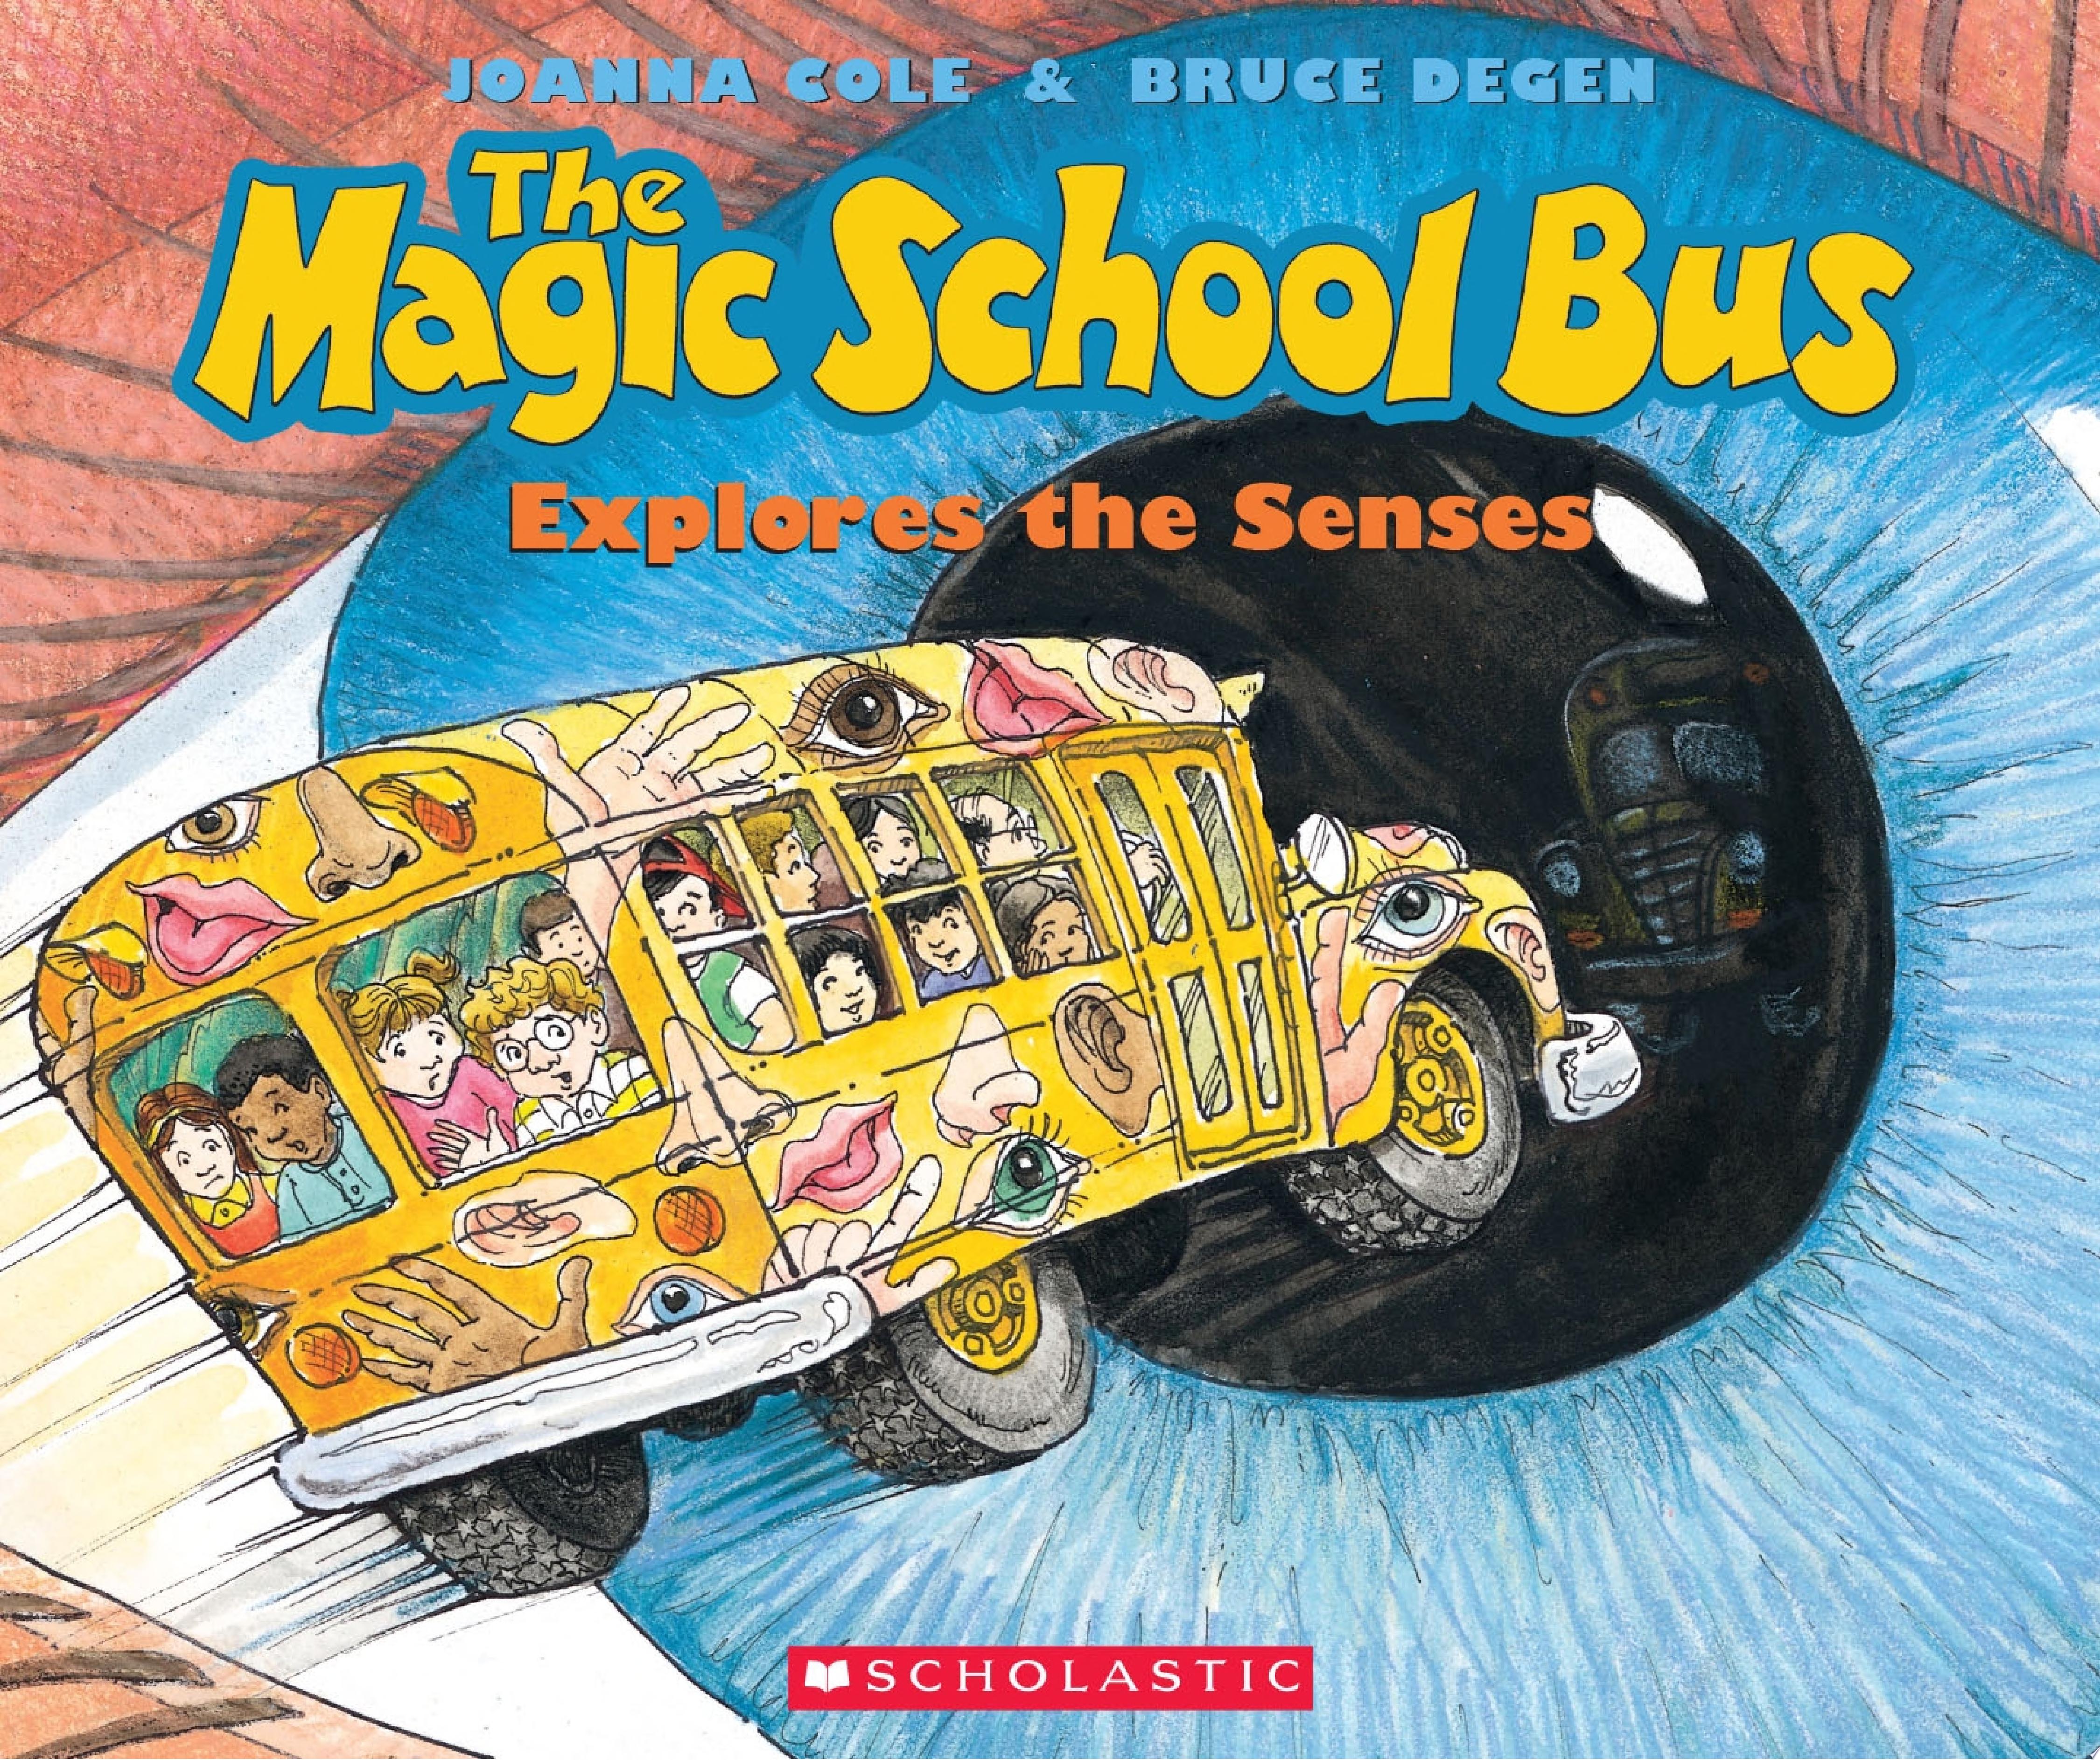 Image for "The Magic School Bus Explores the Senses"